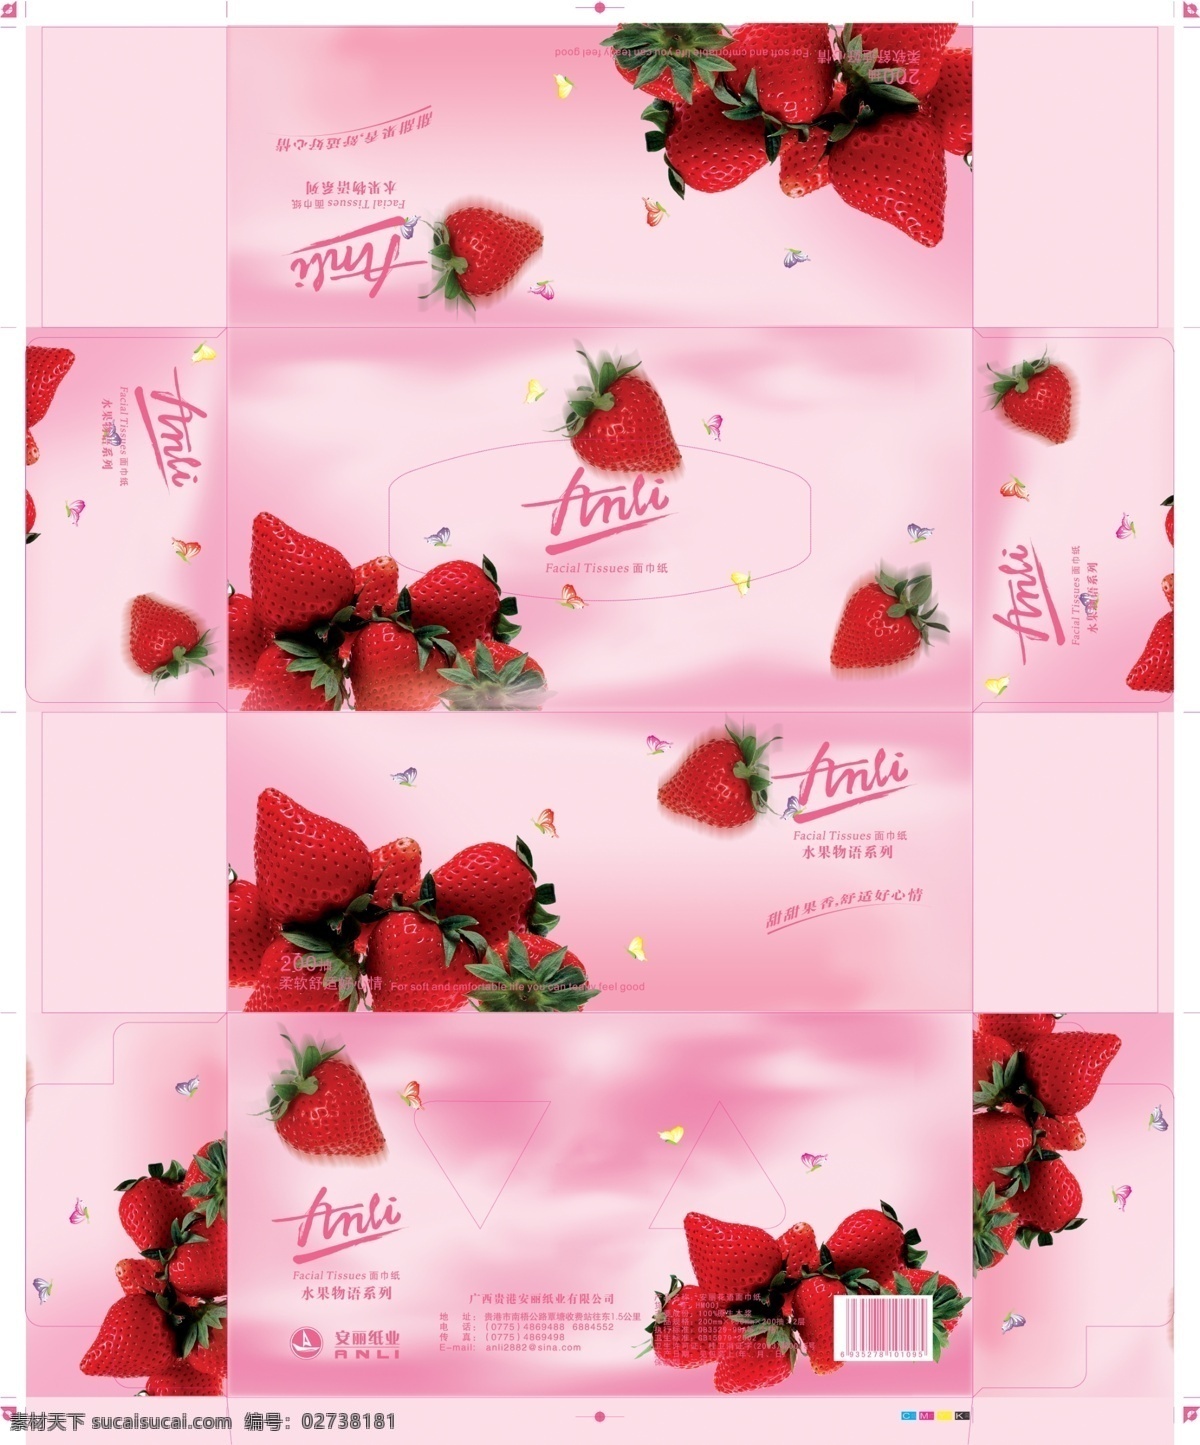 红色 草莓 抽 纸包装 psd素材 包装设计 抽纸包装 红色草莓 粉色调包装 纸品包装 psd源文件